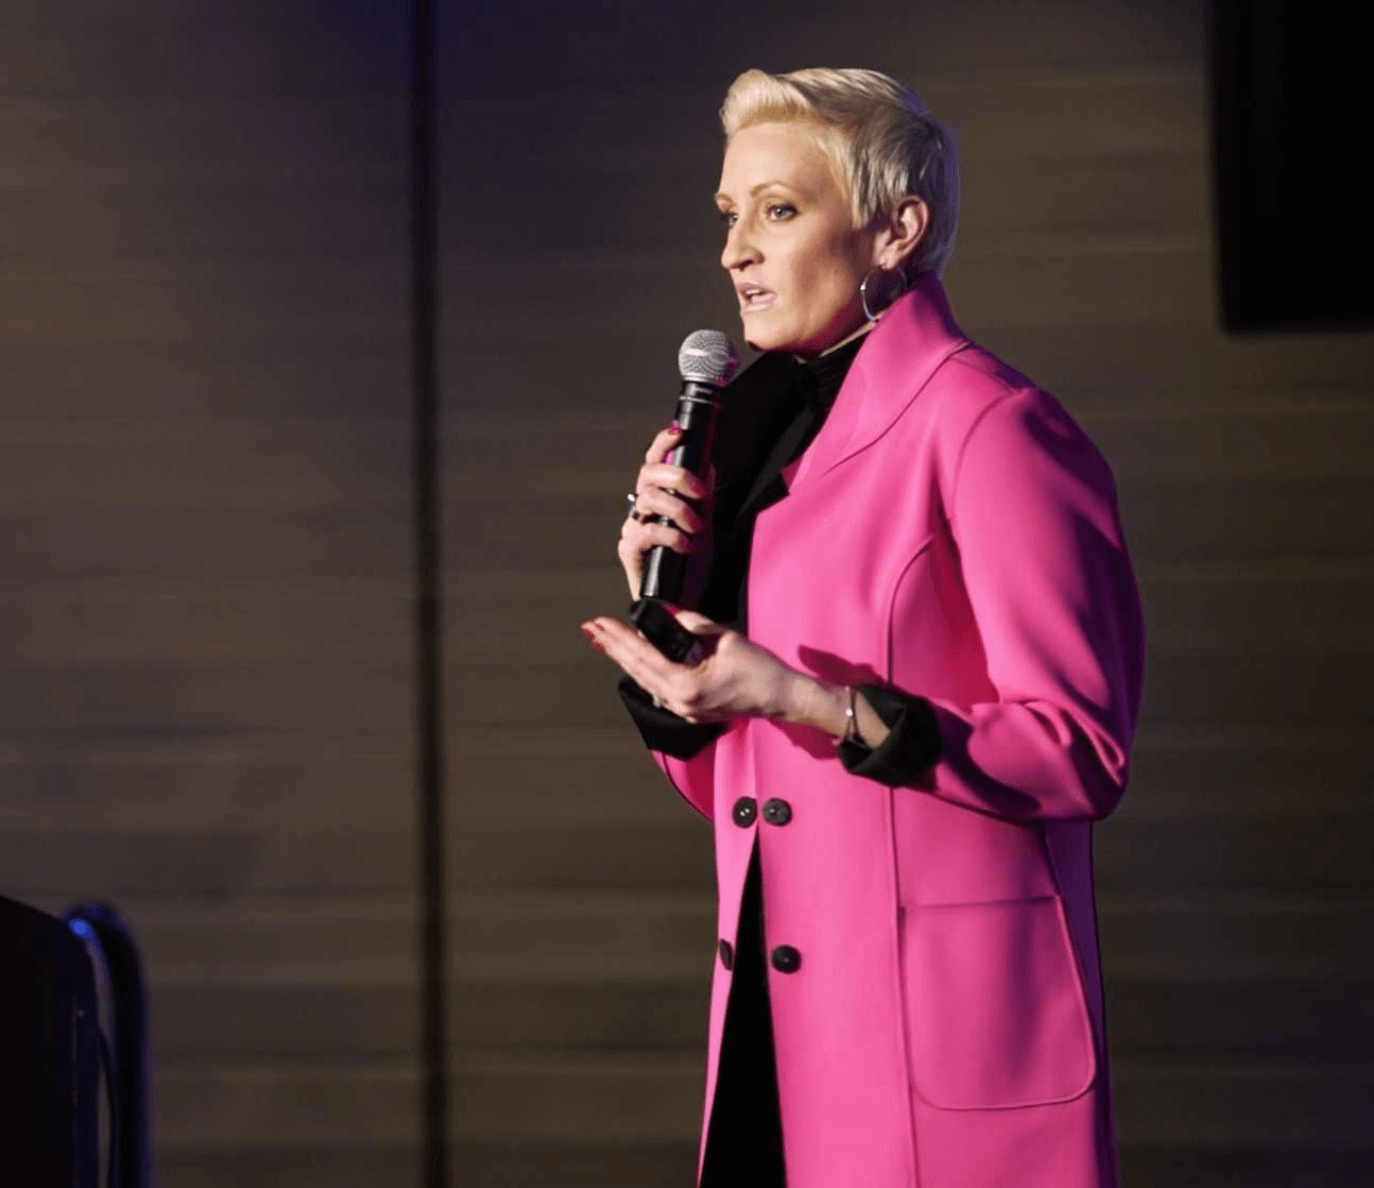 keynote speaker holding microphone wearing bright pink jacket